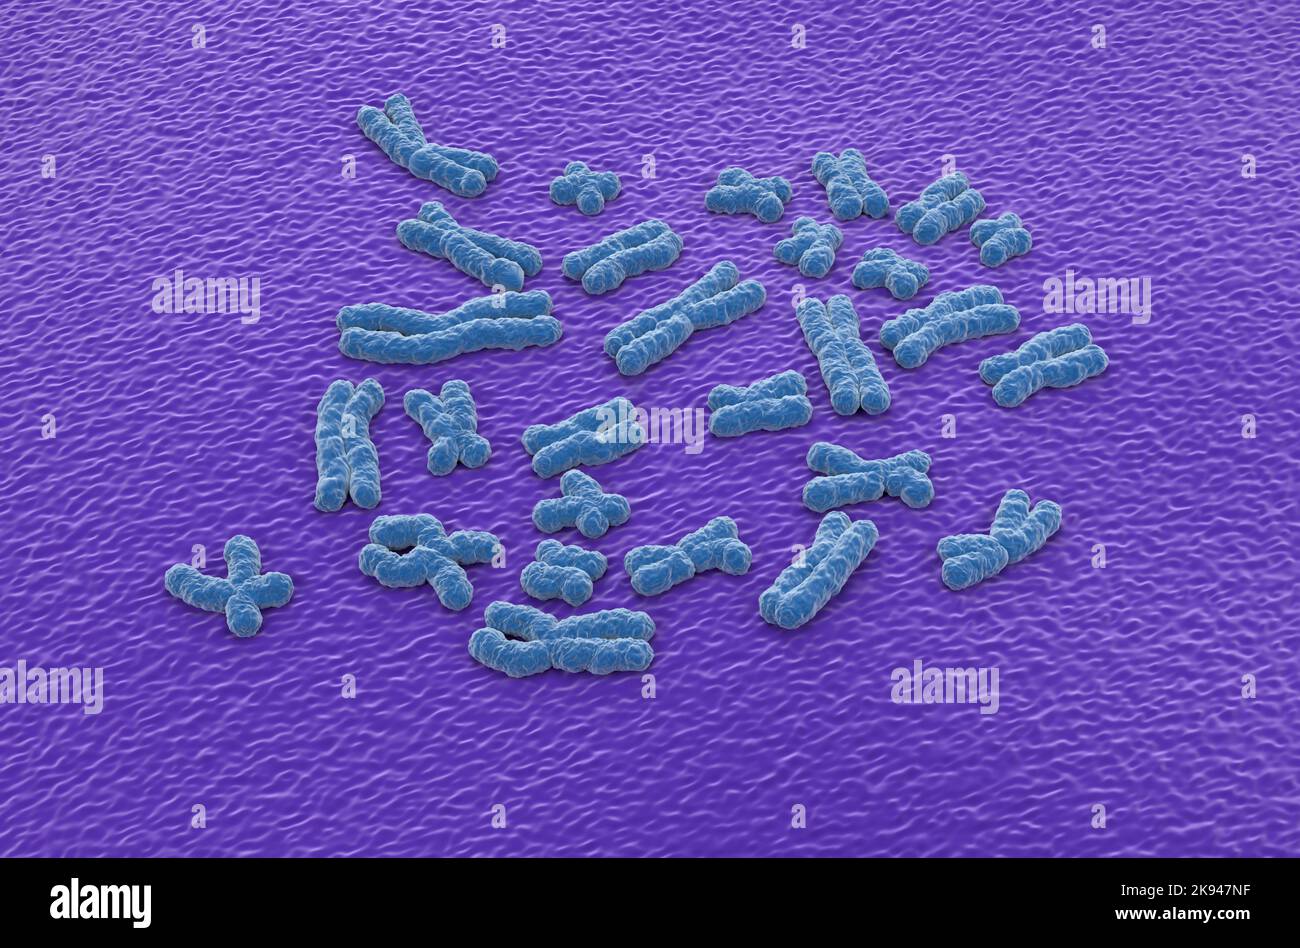 Cromosomi umani (23 + X, Y) strutture fatte di proteina e di una singola molecola di DNA - vista isometrica illustrazione 3D Foto Stock